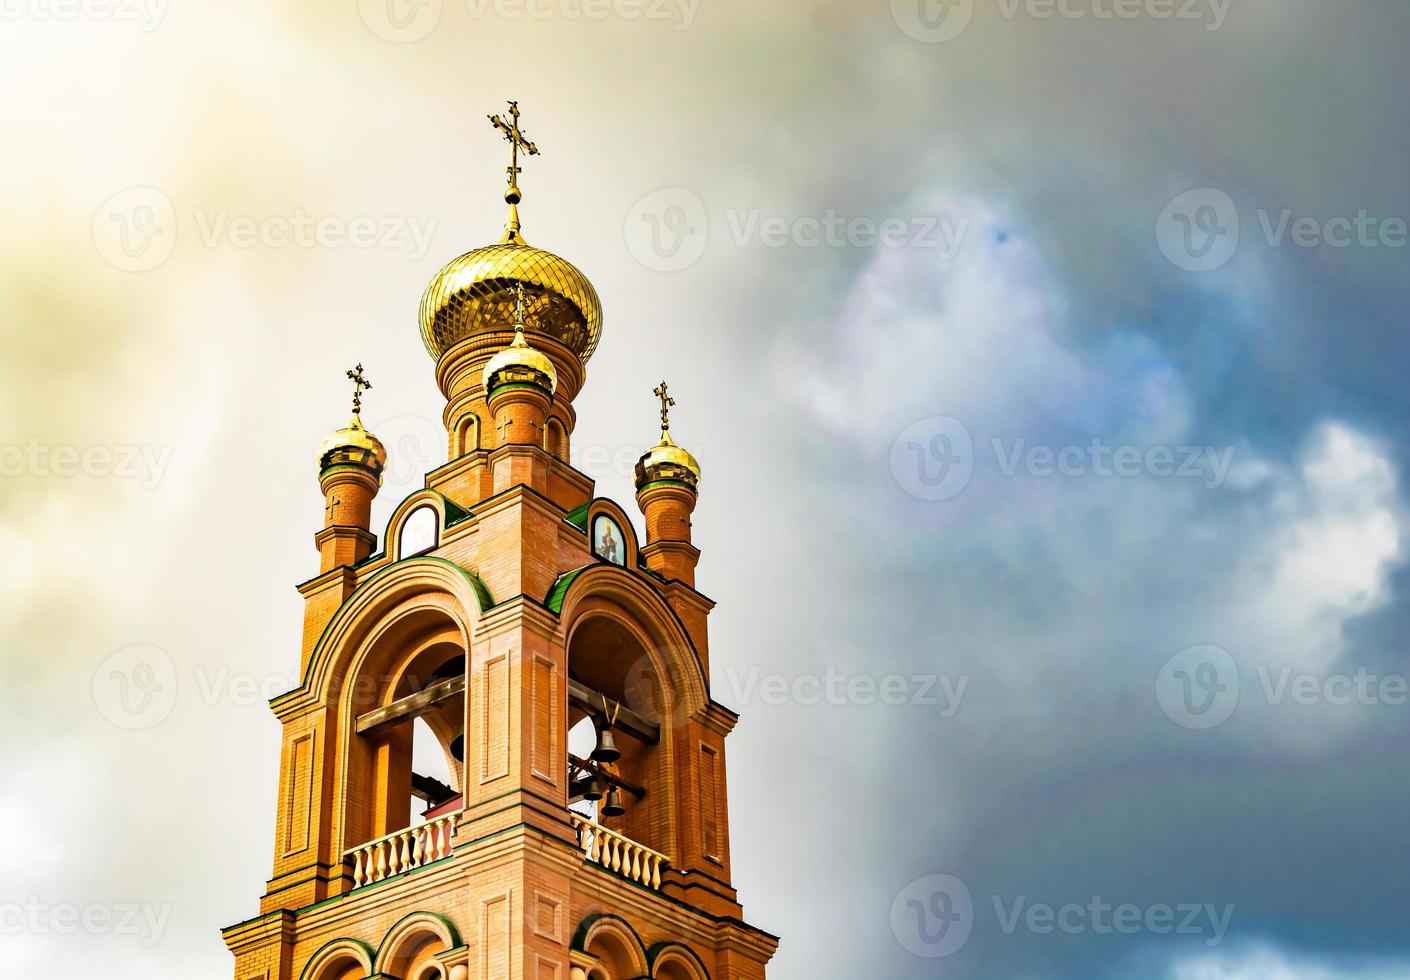 cruz de igreja cristã em torre alta para orações foto